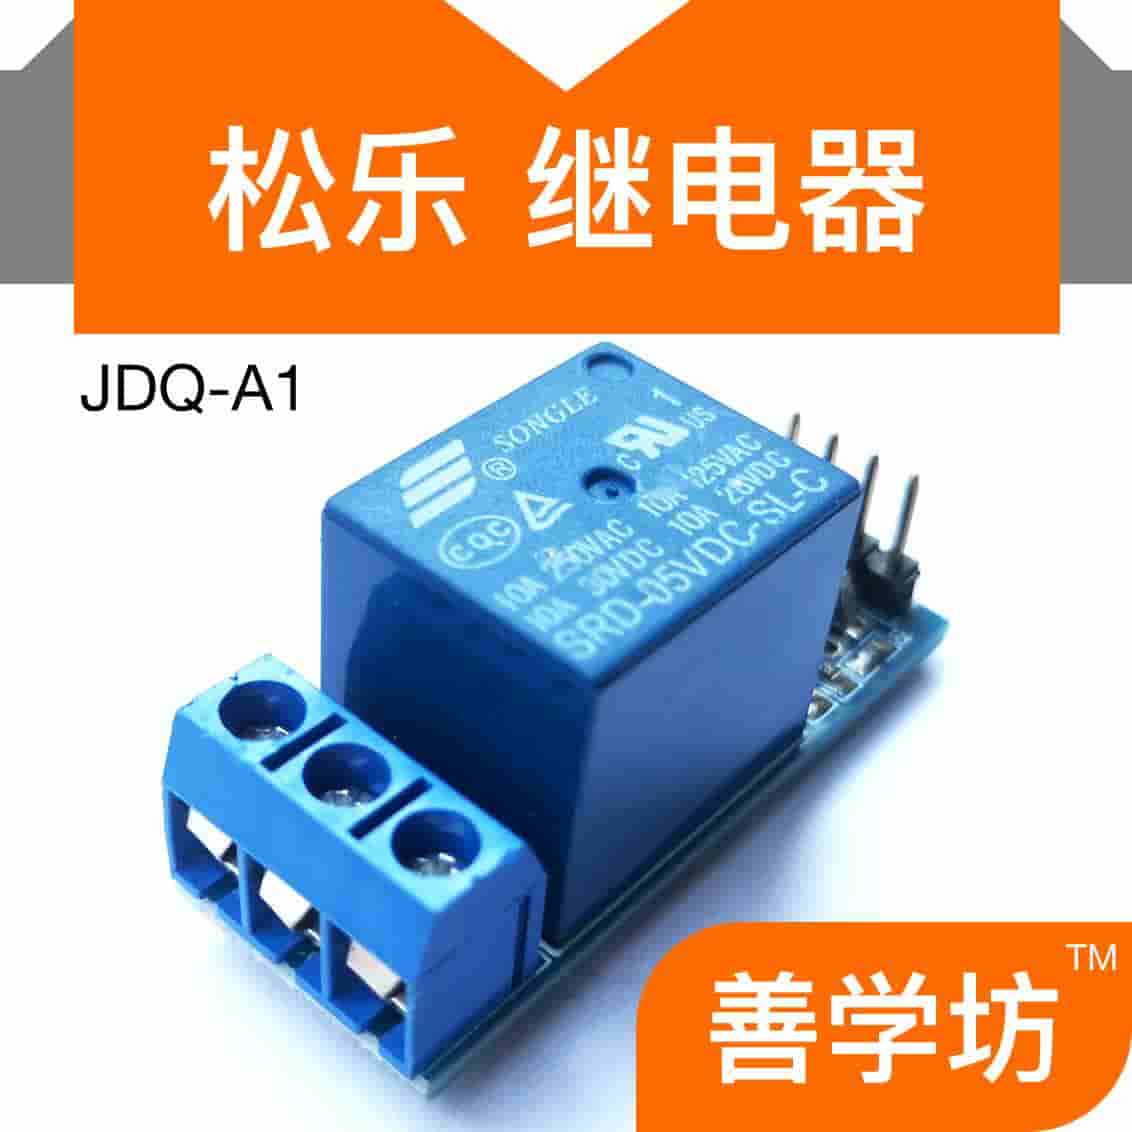 JDQ-A1